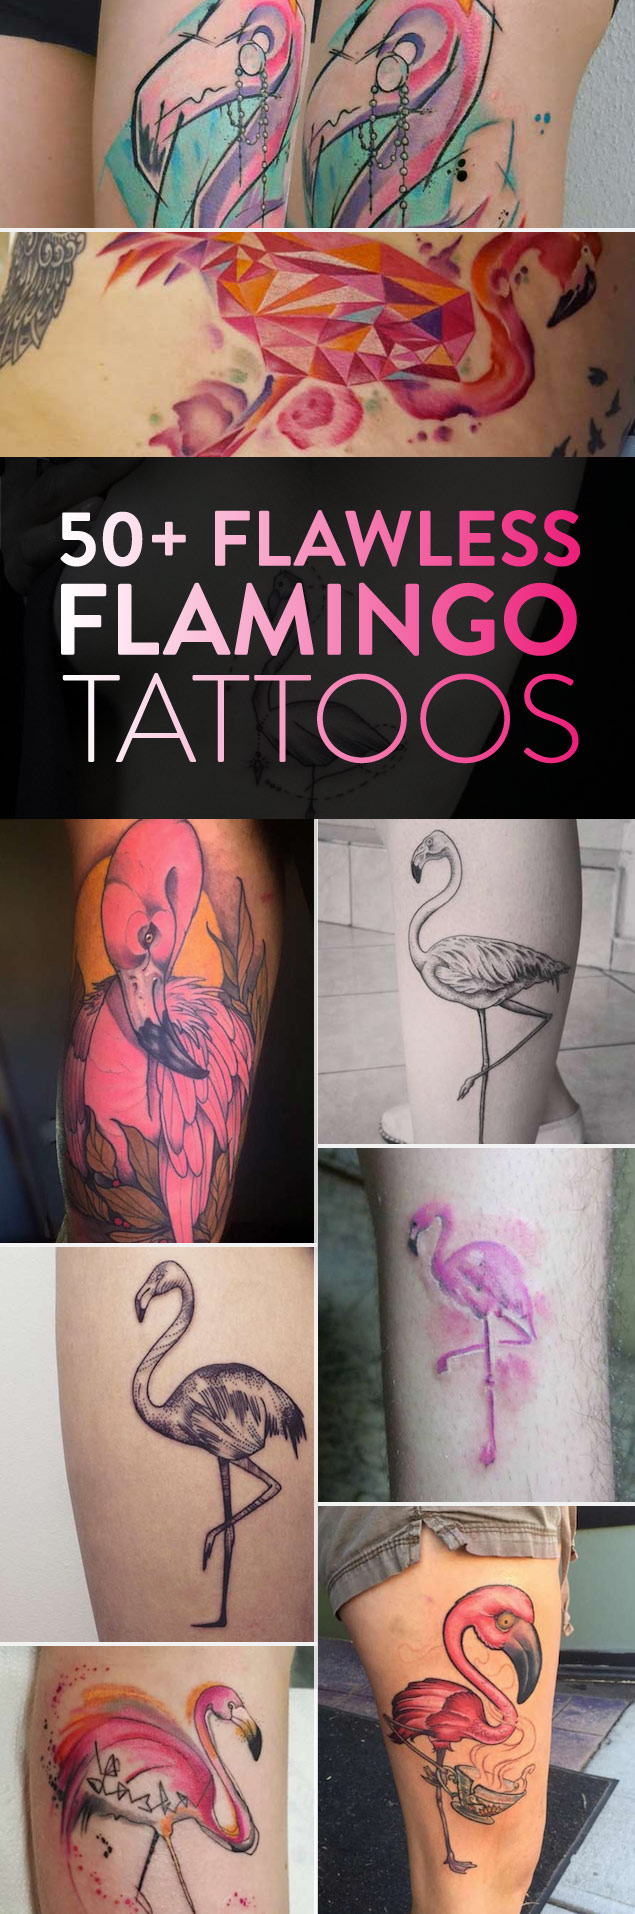 50 Flawless Flamingo Tattoos | TattooBlend